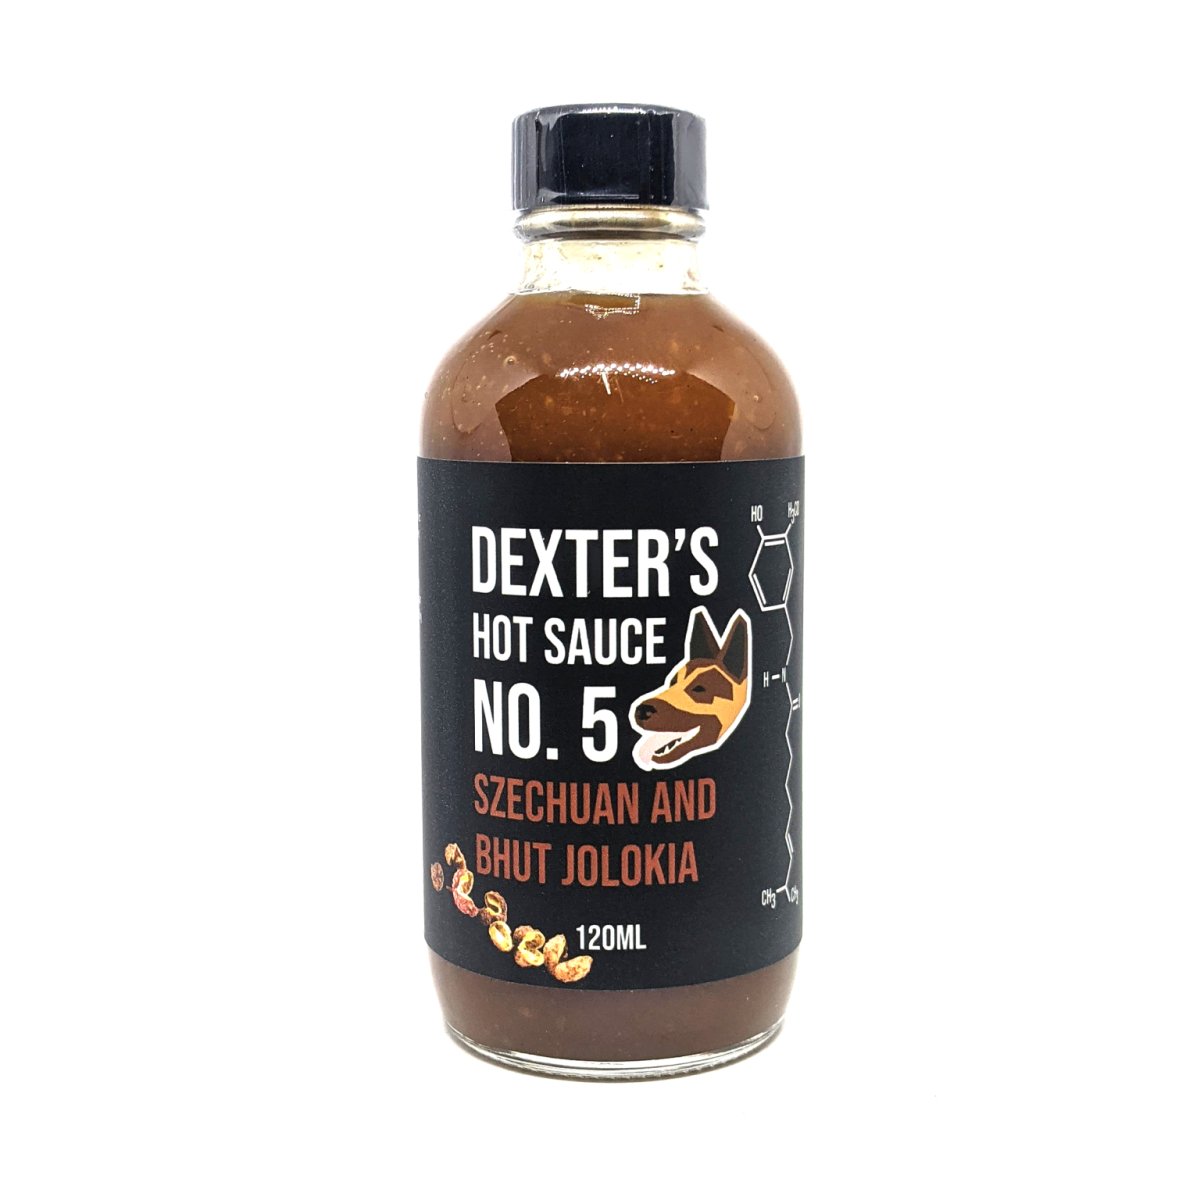 No. 5 Szechuan & Bhut Jolokia Hot Sauce (120ml) Dexter's Spice Co. - Alpine Abode